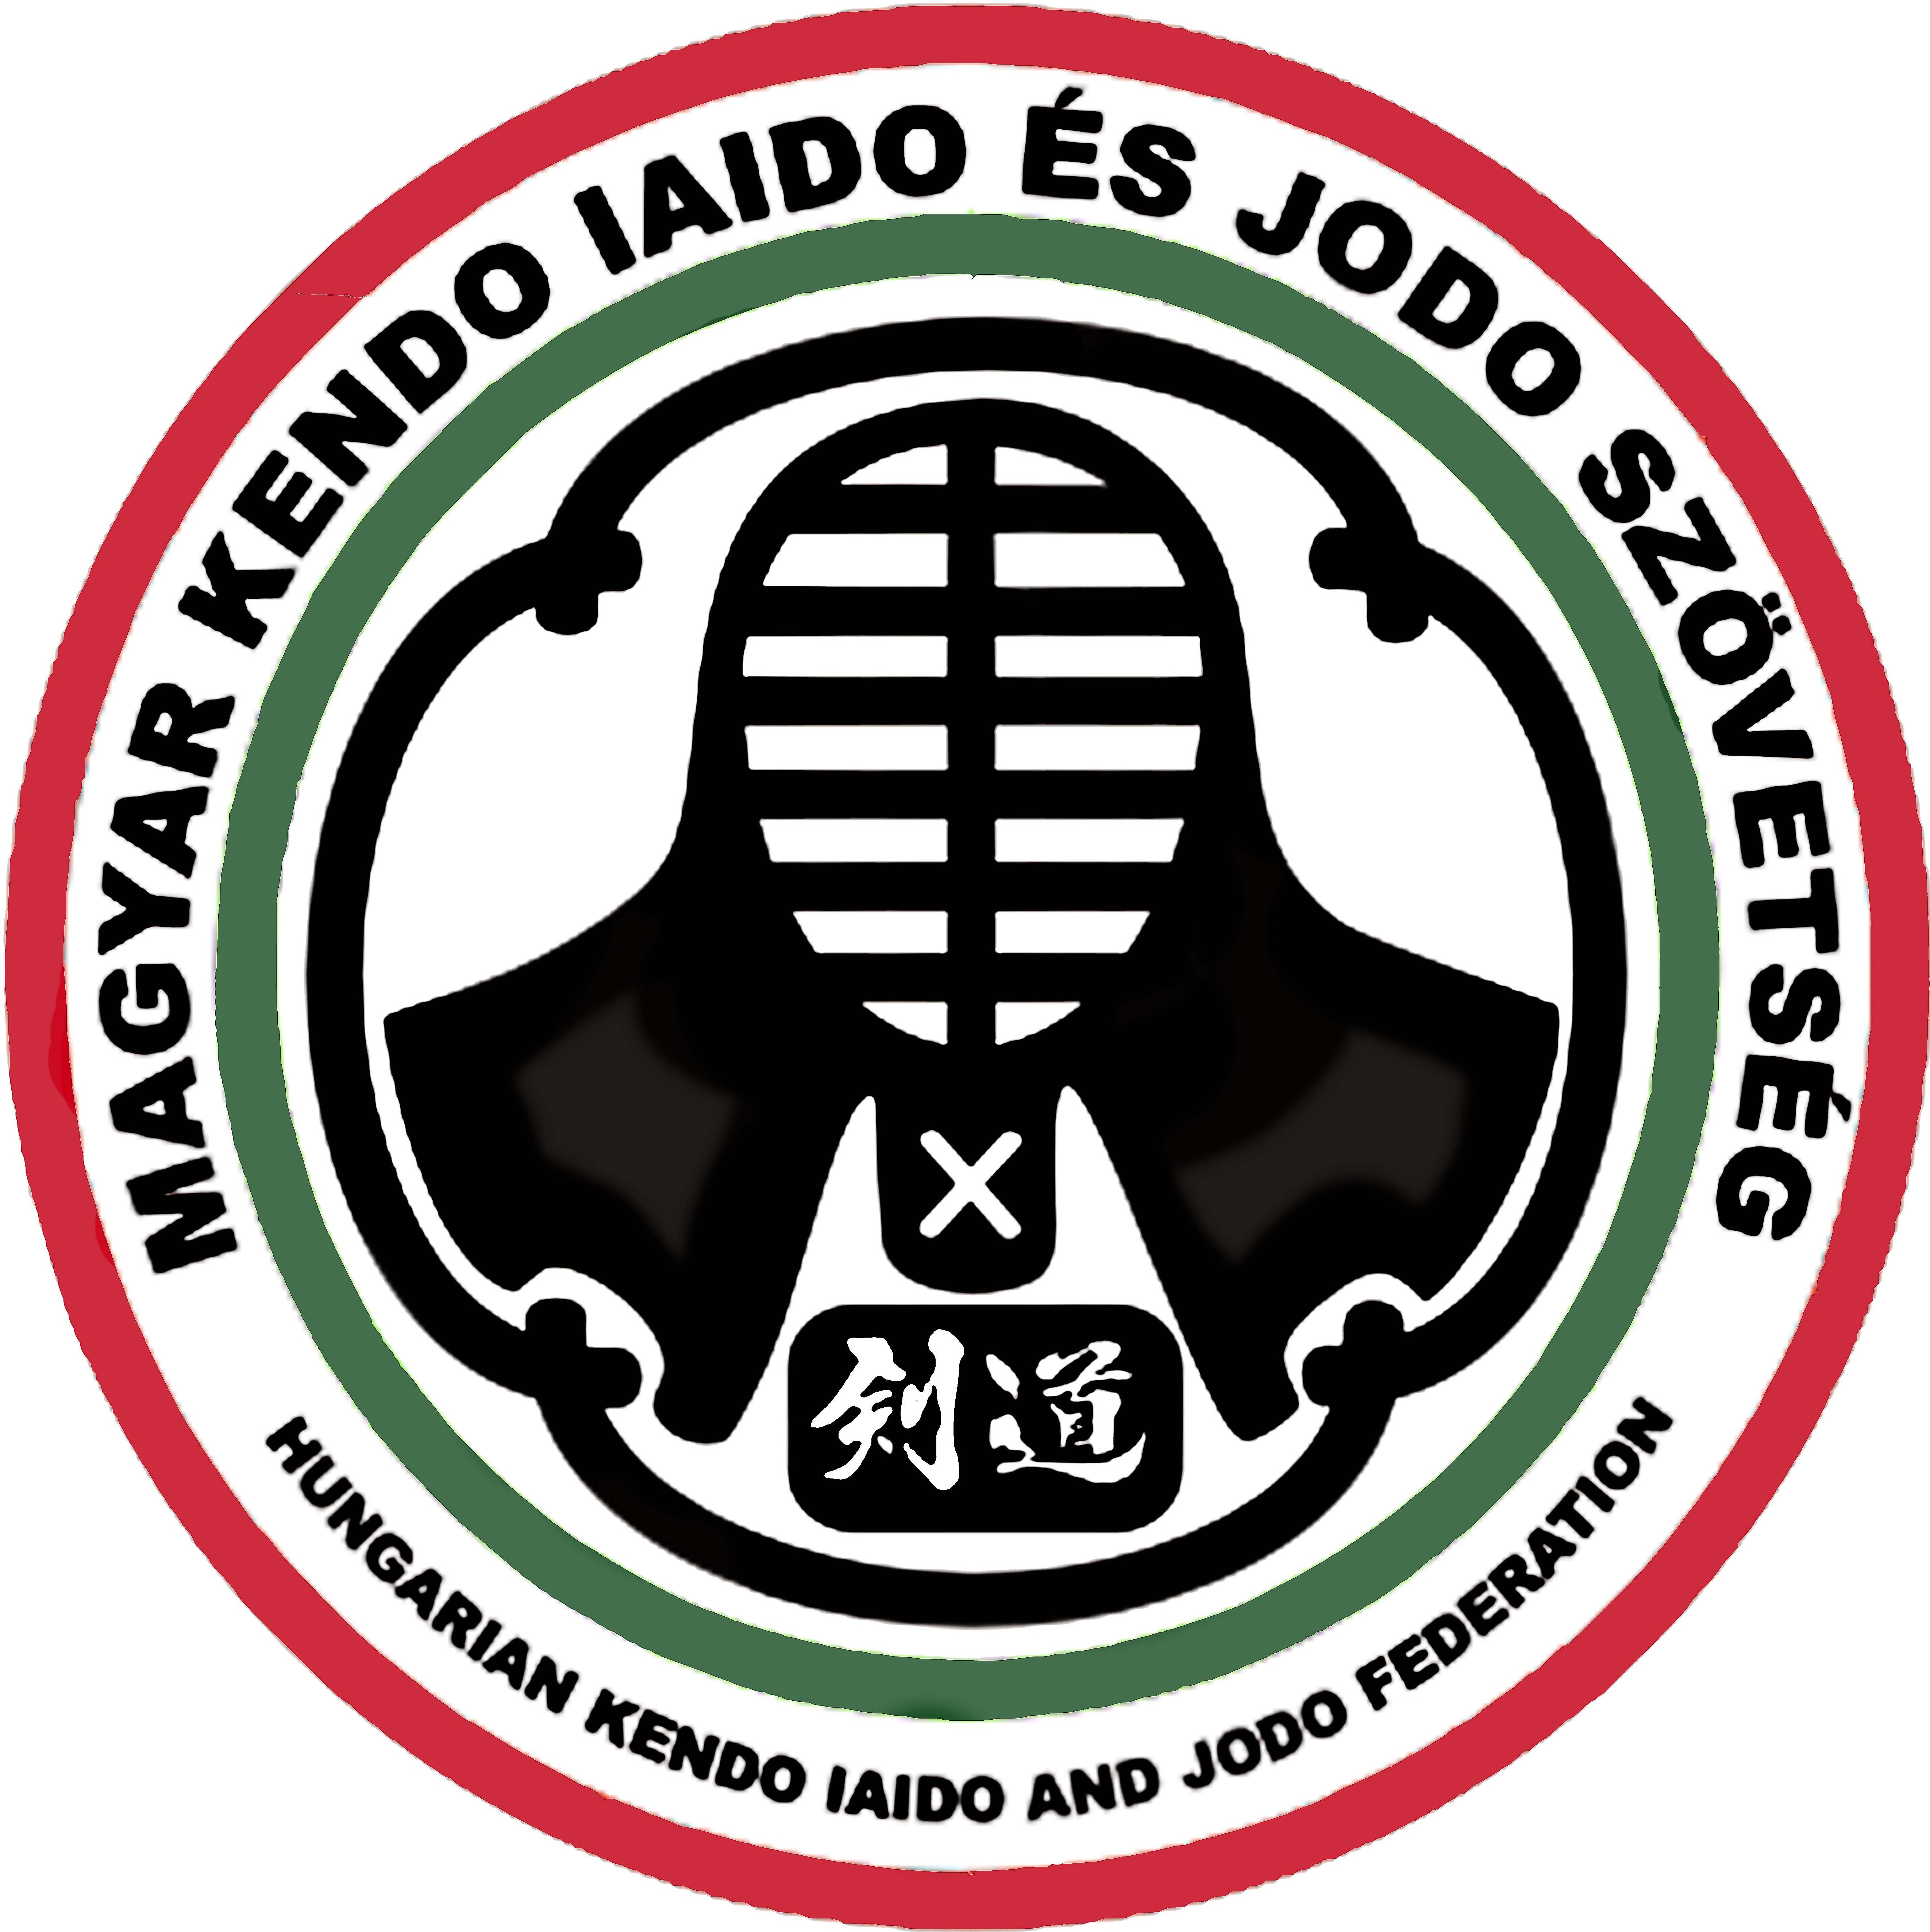 Magyar Kendo,Iaido és Jodo Szövetség